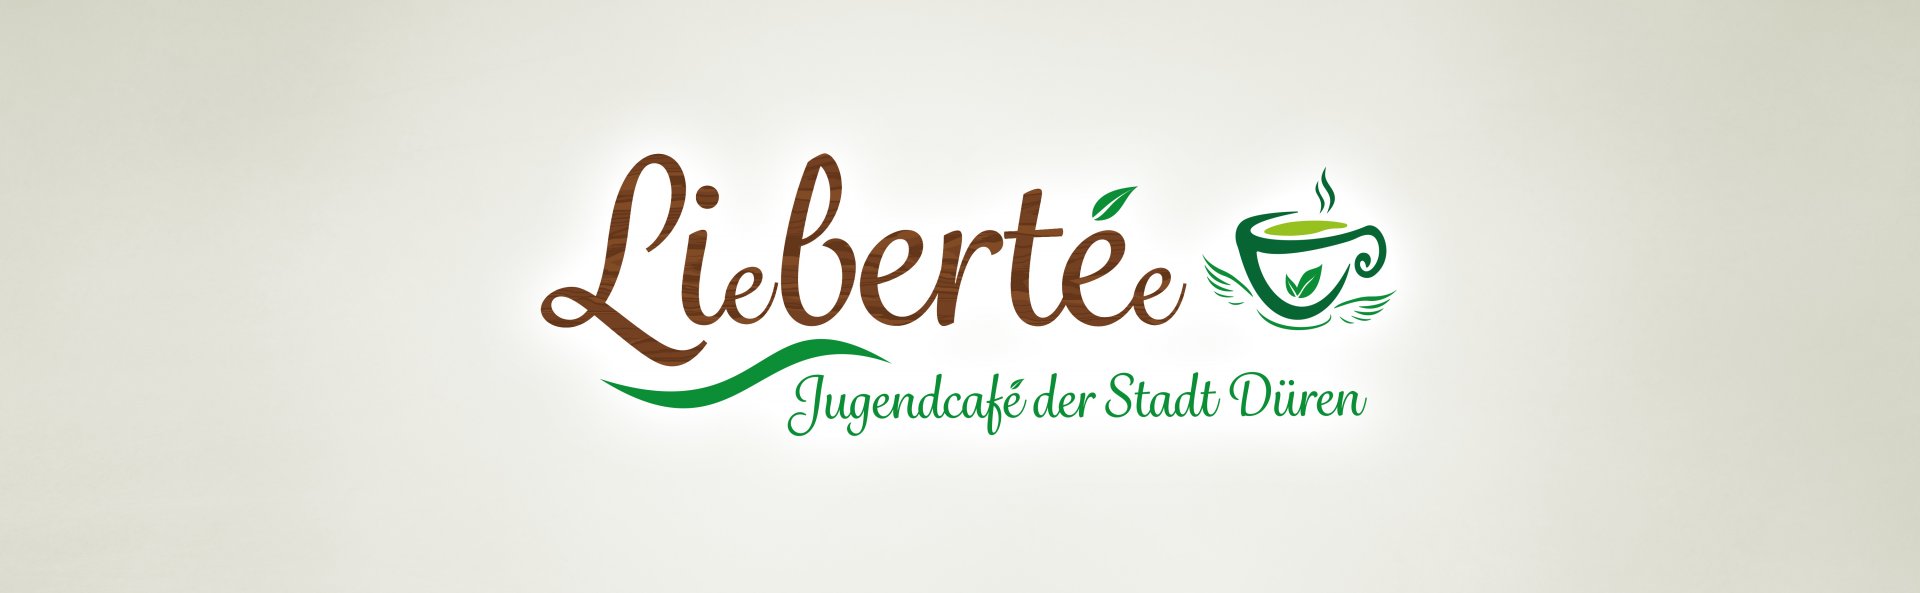 Logo des Jugendcafés Liebertee